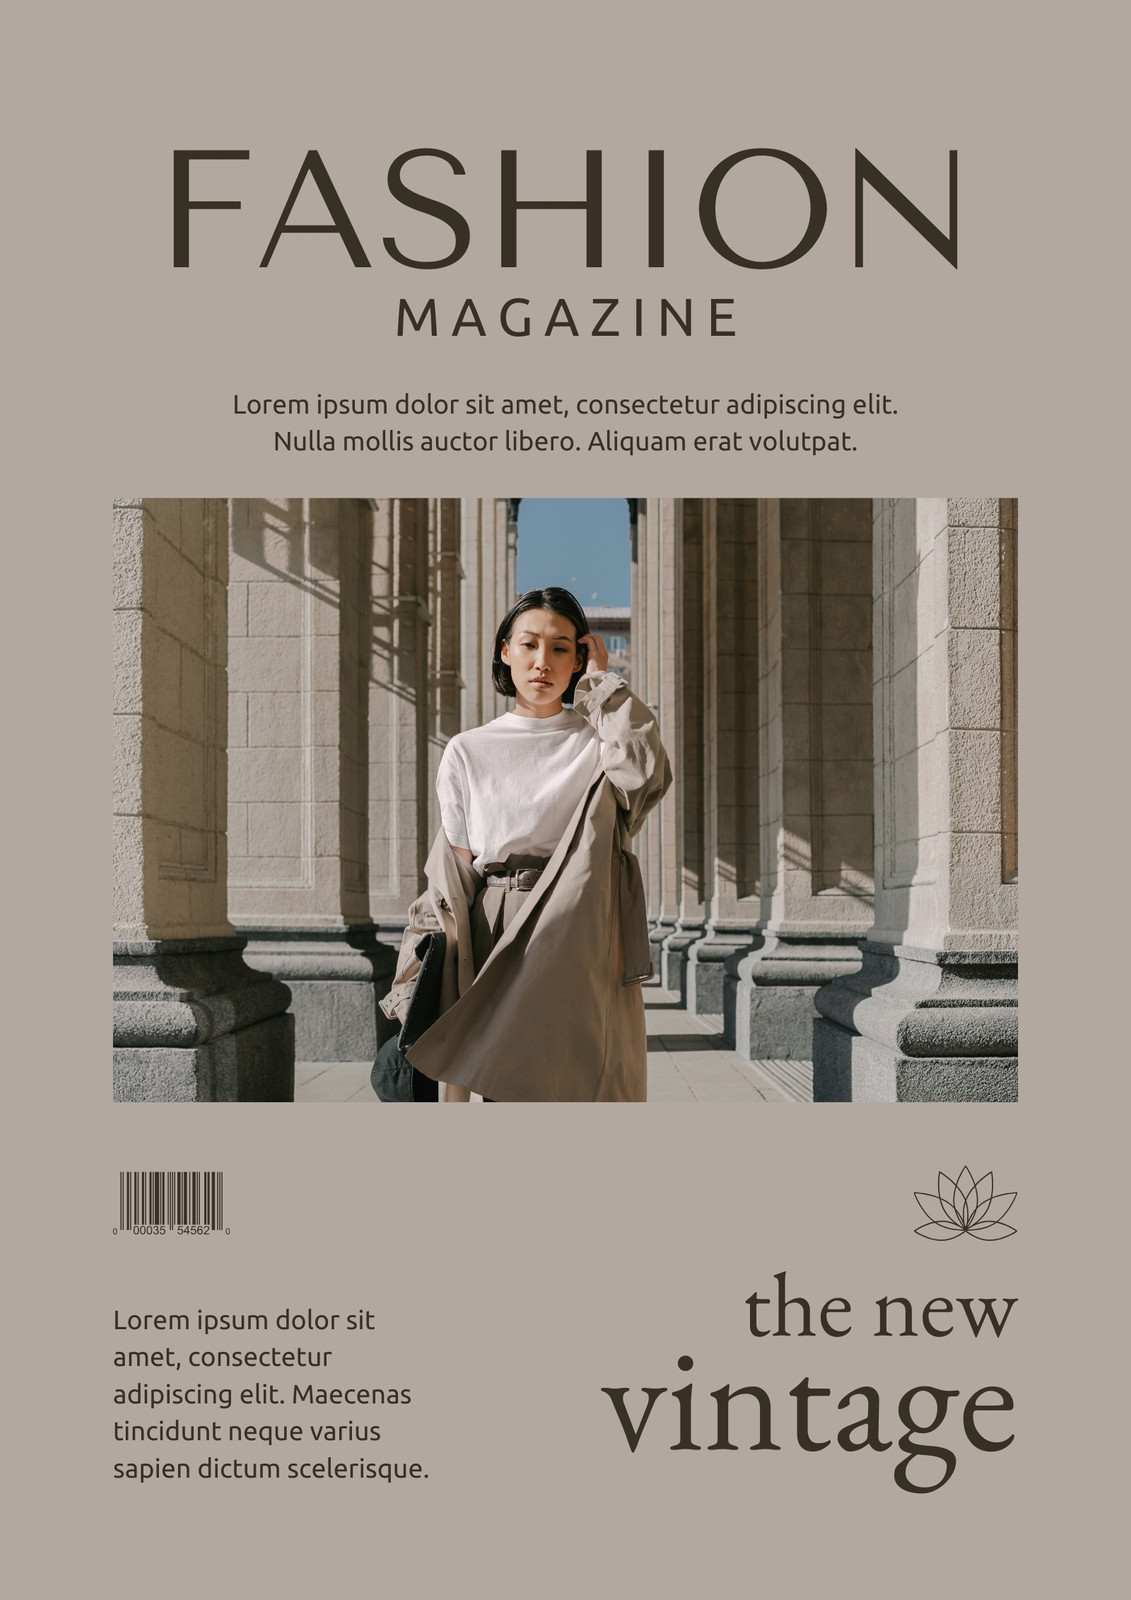 Fashion Magazine Cover Template - Mediamodifier